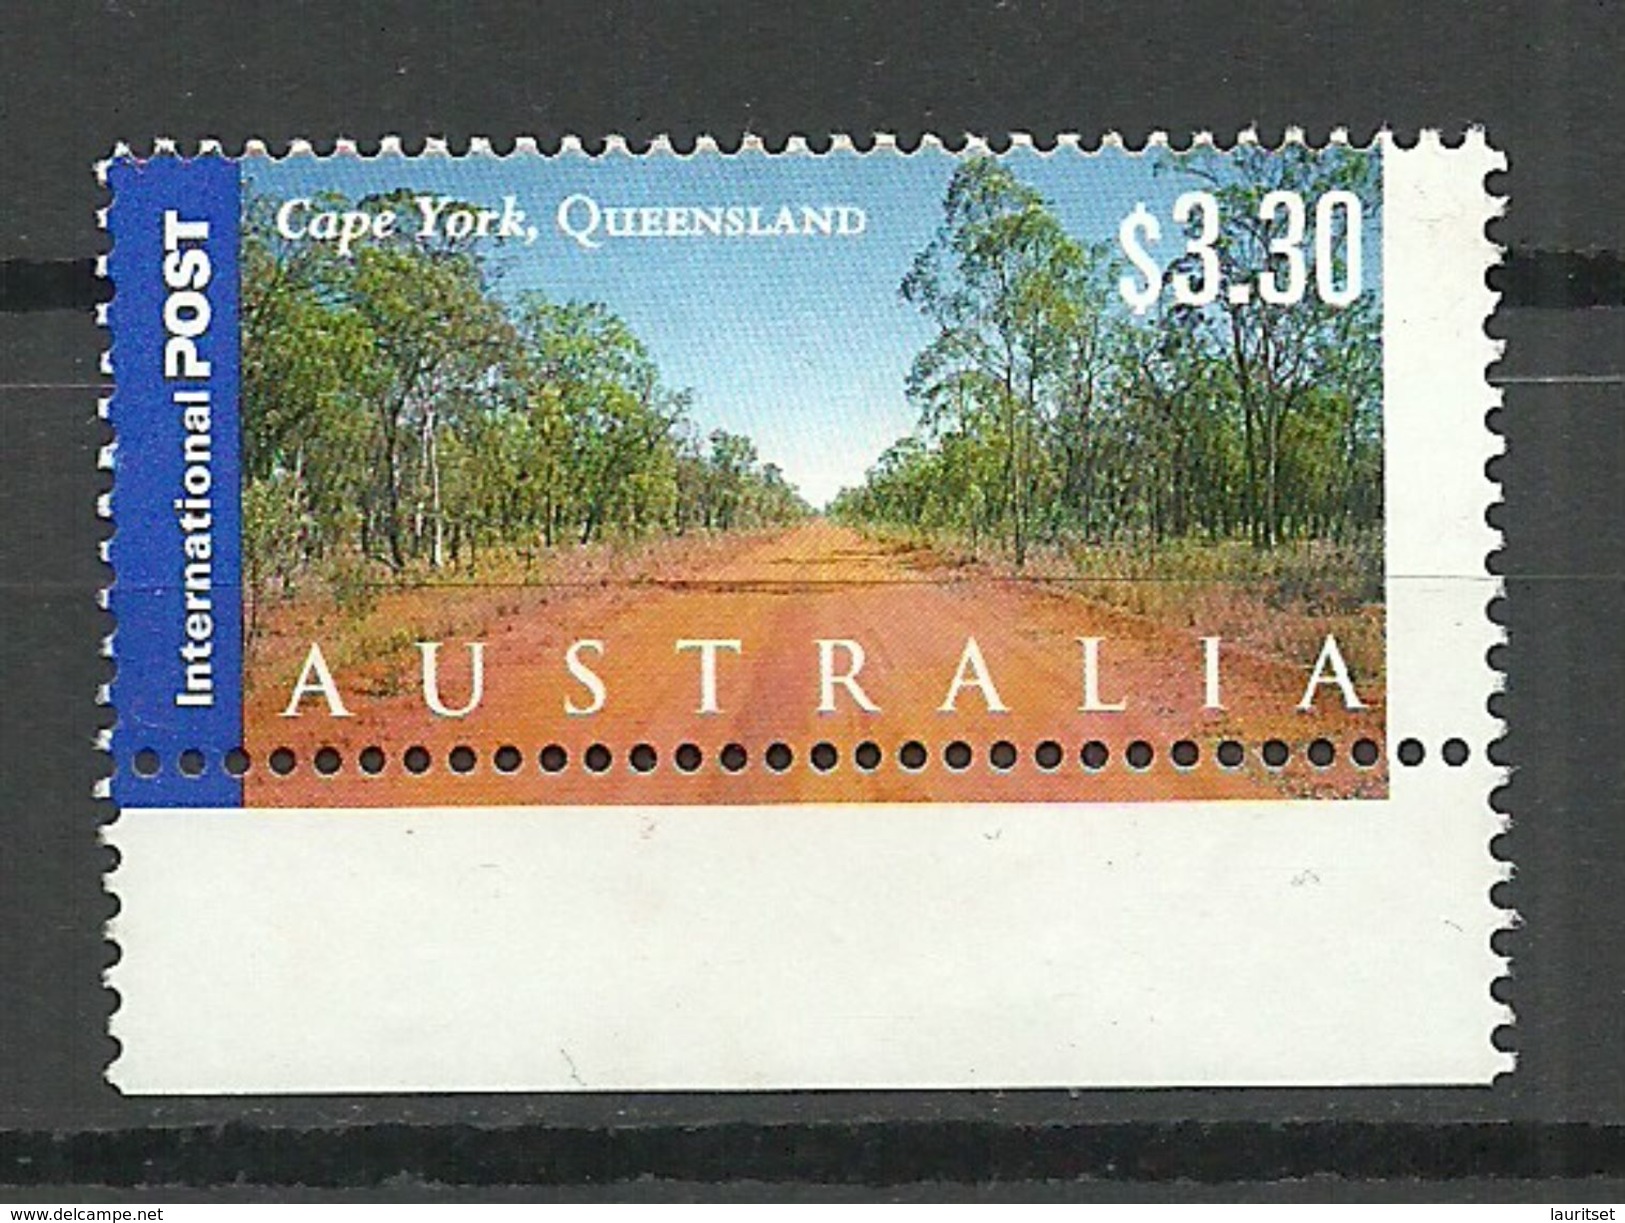 AUSTRALIA Cape York Queensland Landscape (*) Mint No Gum - Mint Stamps